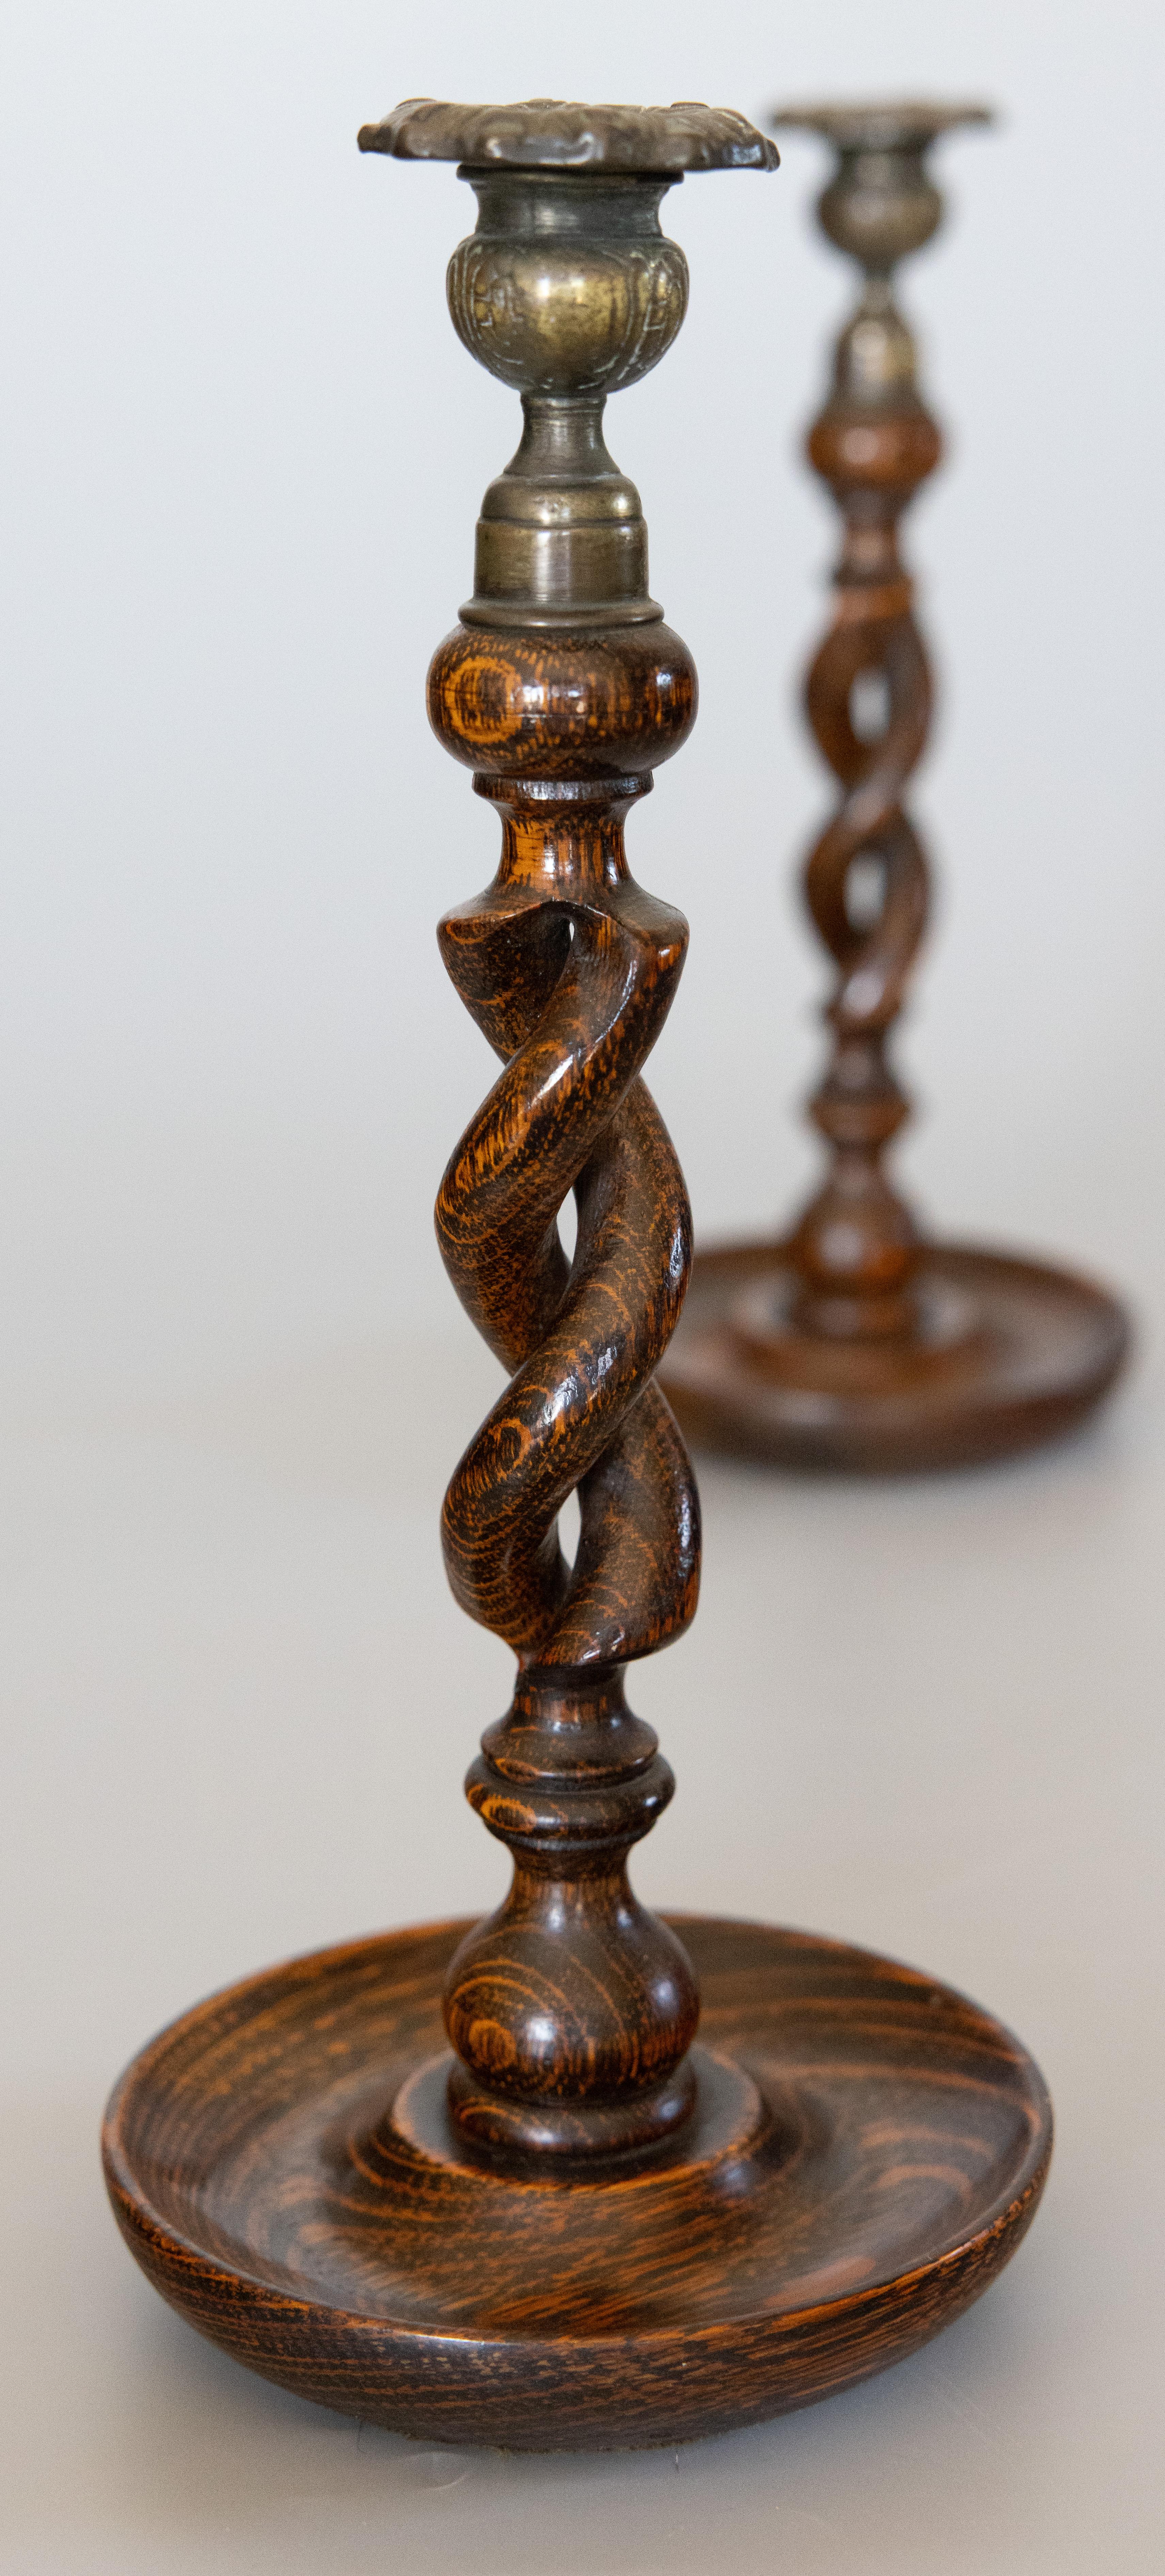 Ein feines, hohes Paar englischer Gerstendreher-Kerzenhalter aus Eiche und Messing, um 1900. Dieses wunderschöne Paar besteht aus handgegossenen Messing-Distelkerzenbechern und handgeschnitzten, offenen Gerstendrehstielen auf handgedrechselten